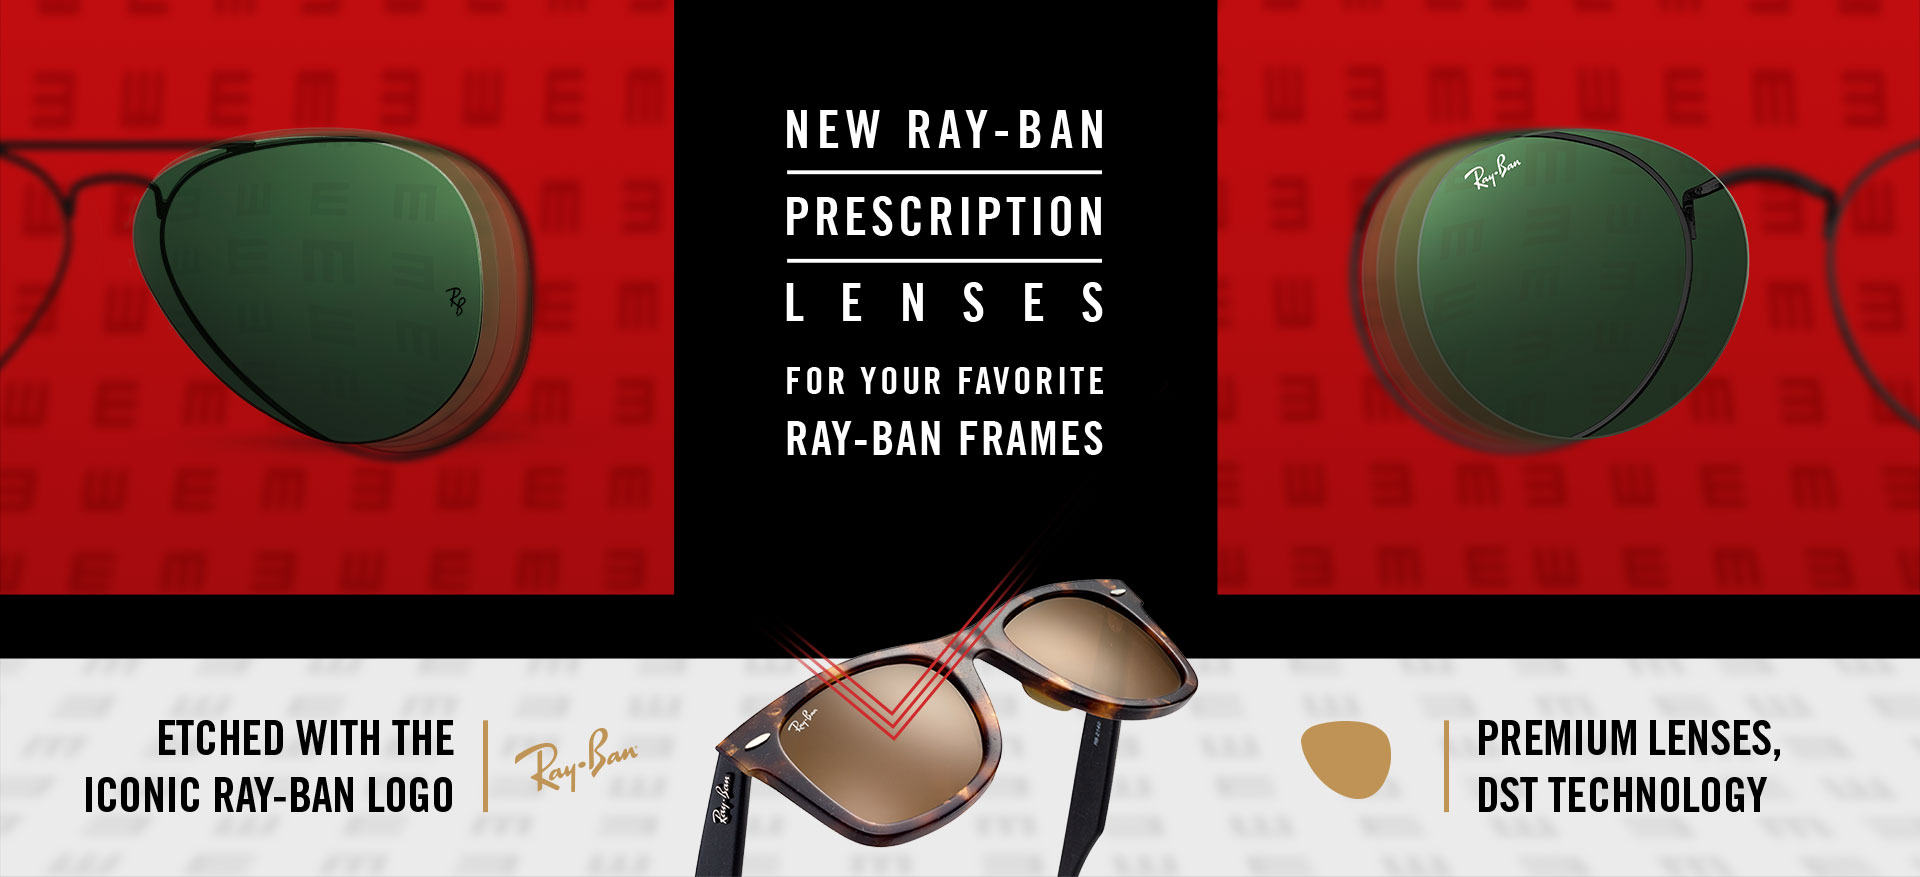 Prescription Sunglasses Online Ray Ban Usa